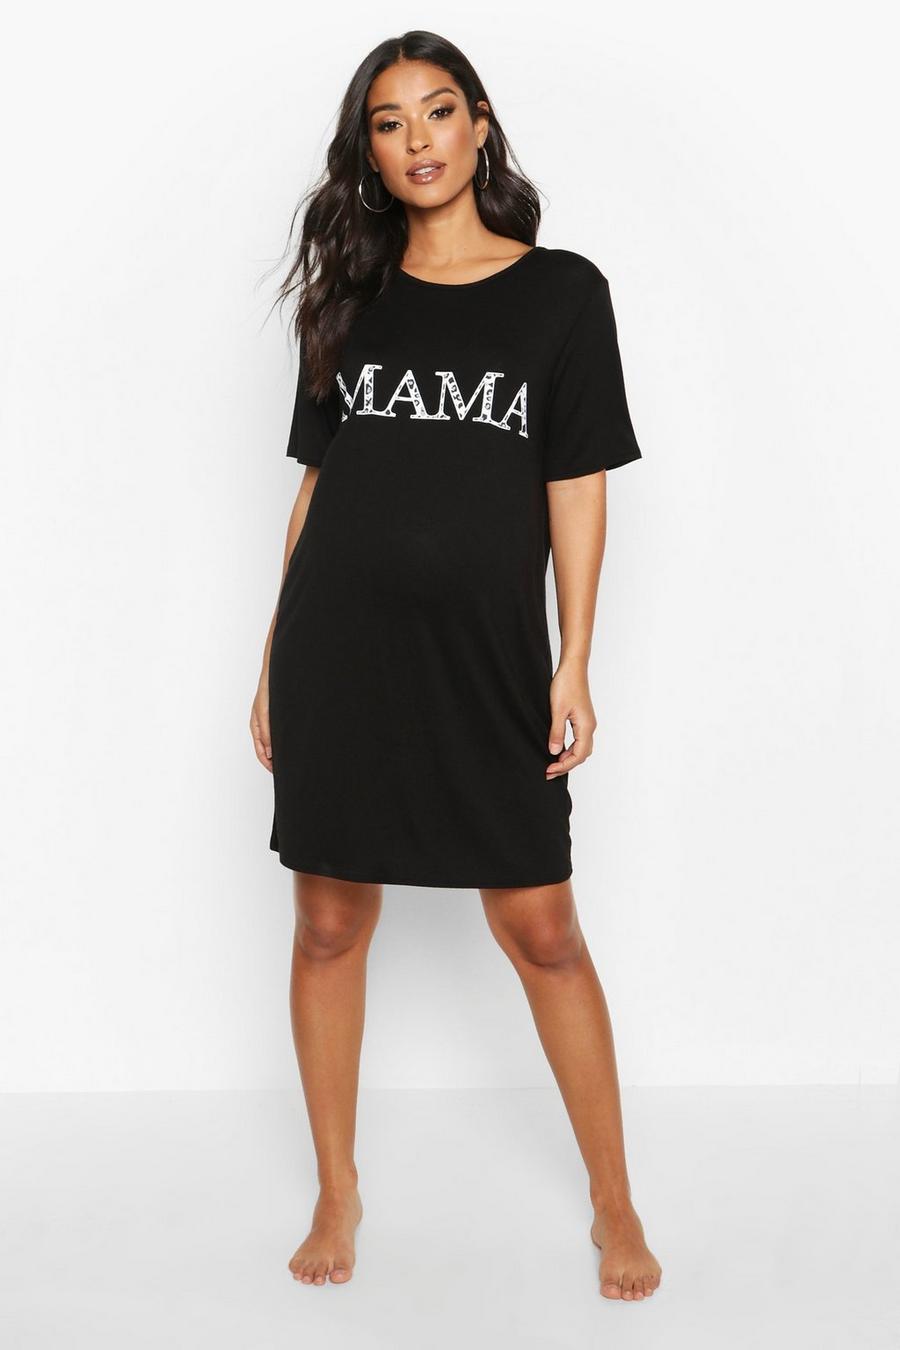 Camicia da notte premaman leopardata con scritta “Mama” image number 1